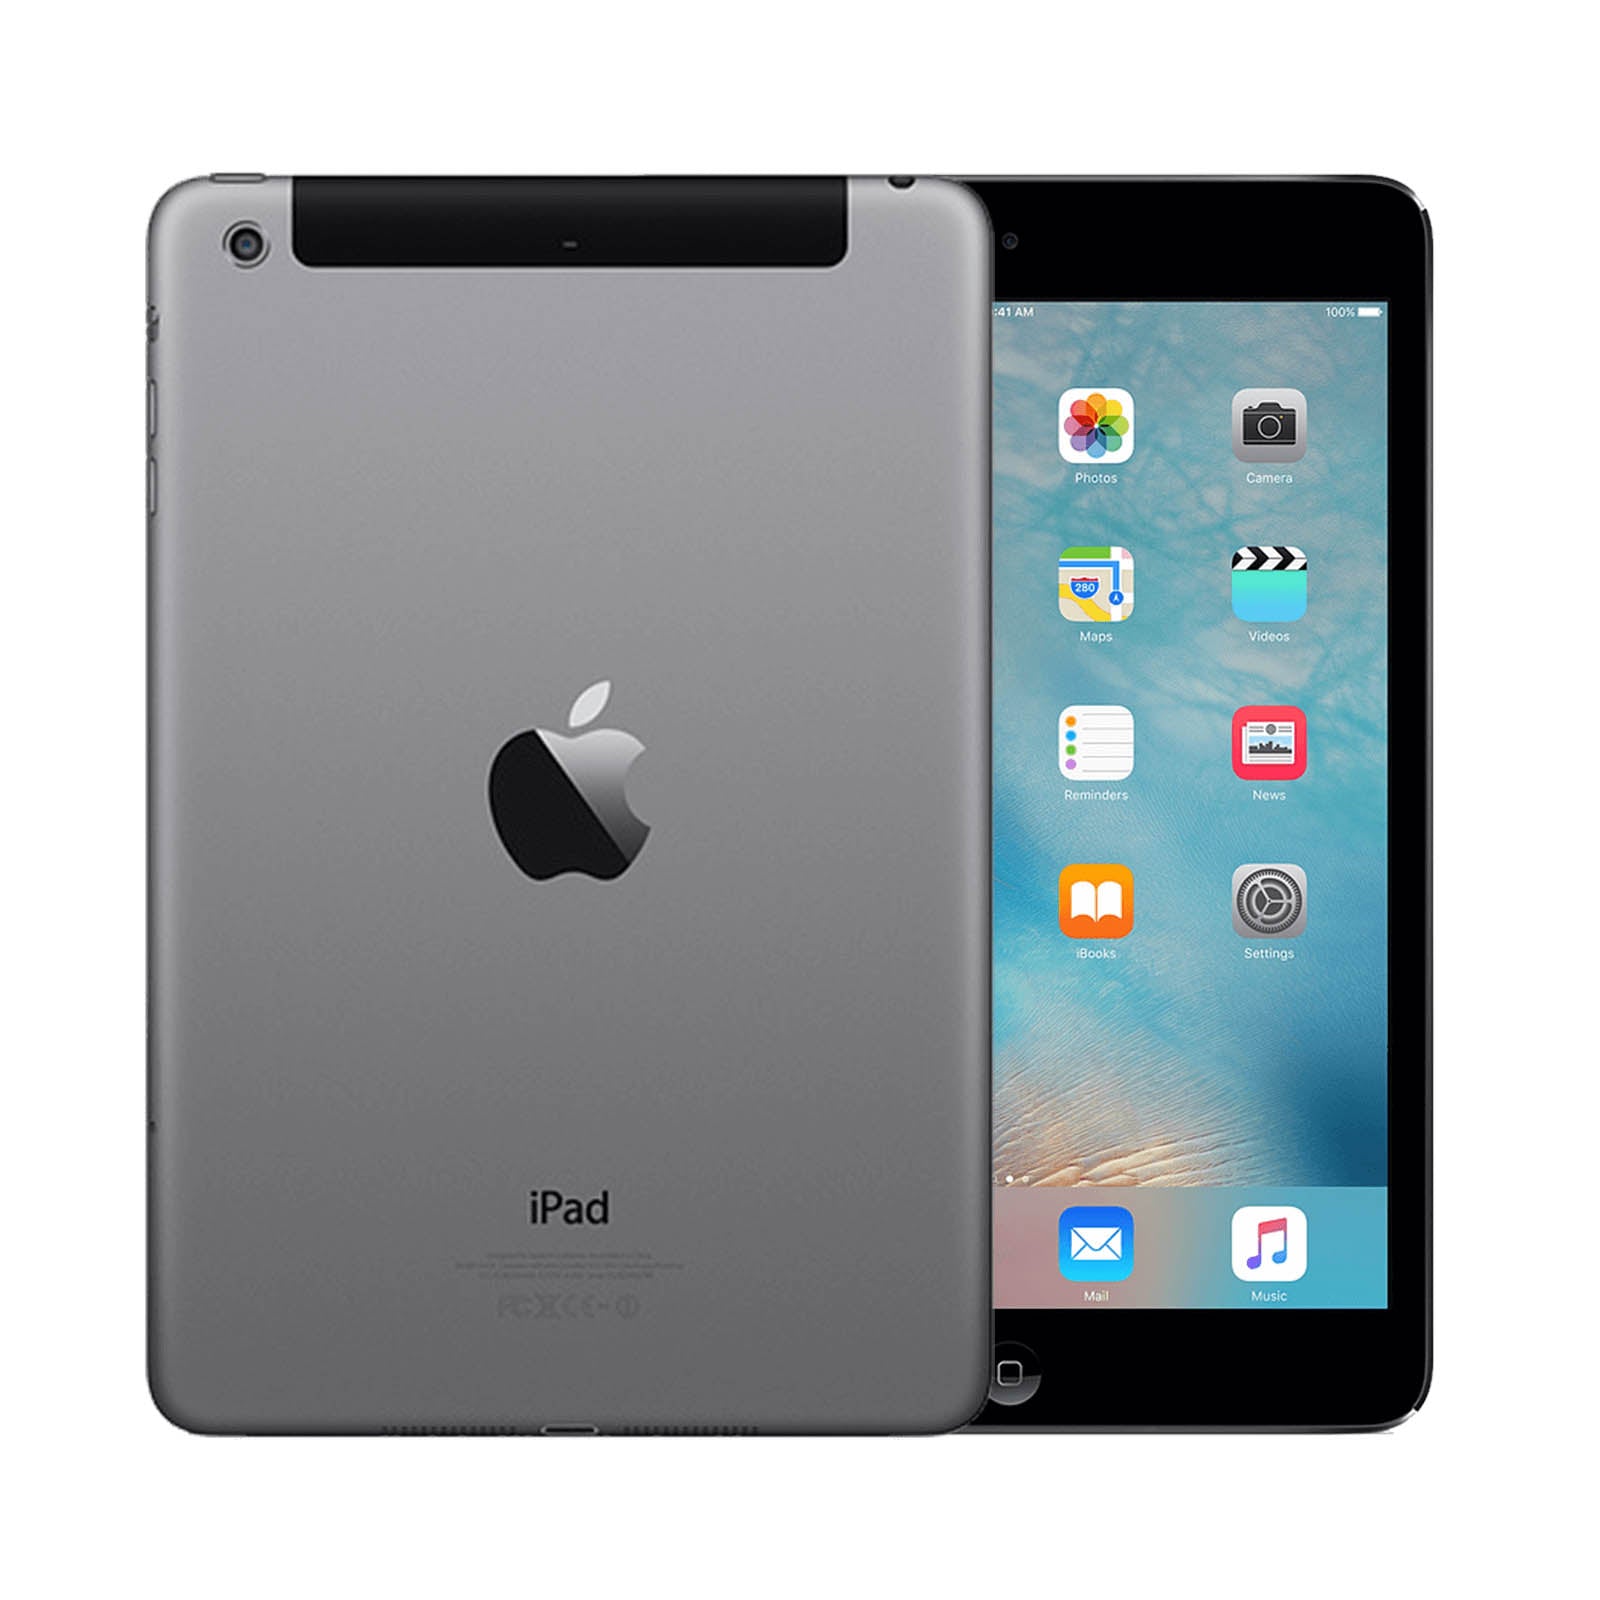 Apple iPad mini 2 64GB Black Very Good - Unlocked